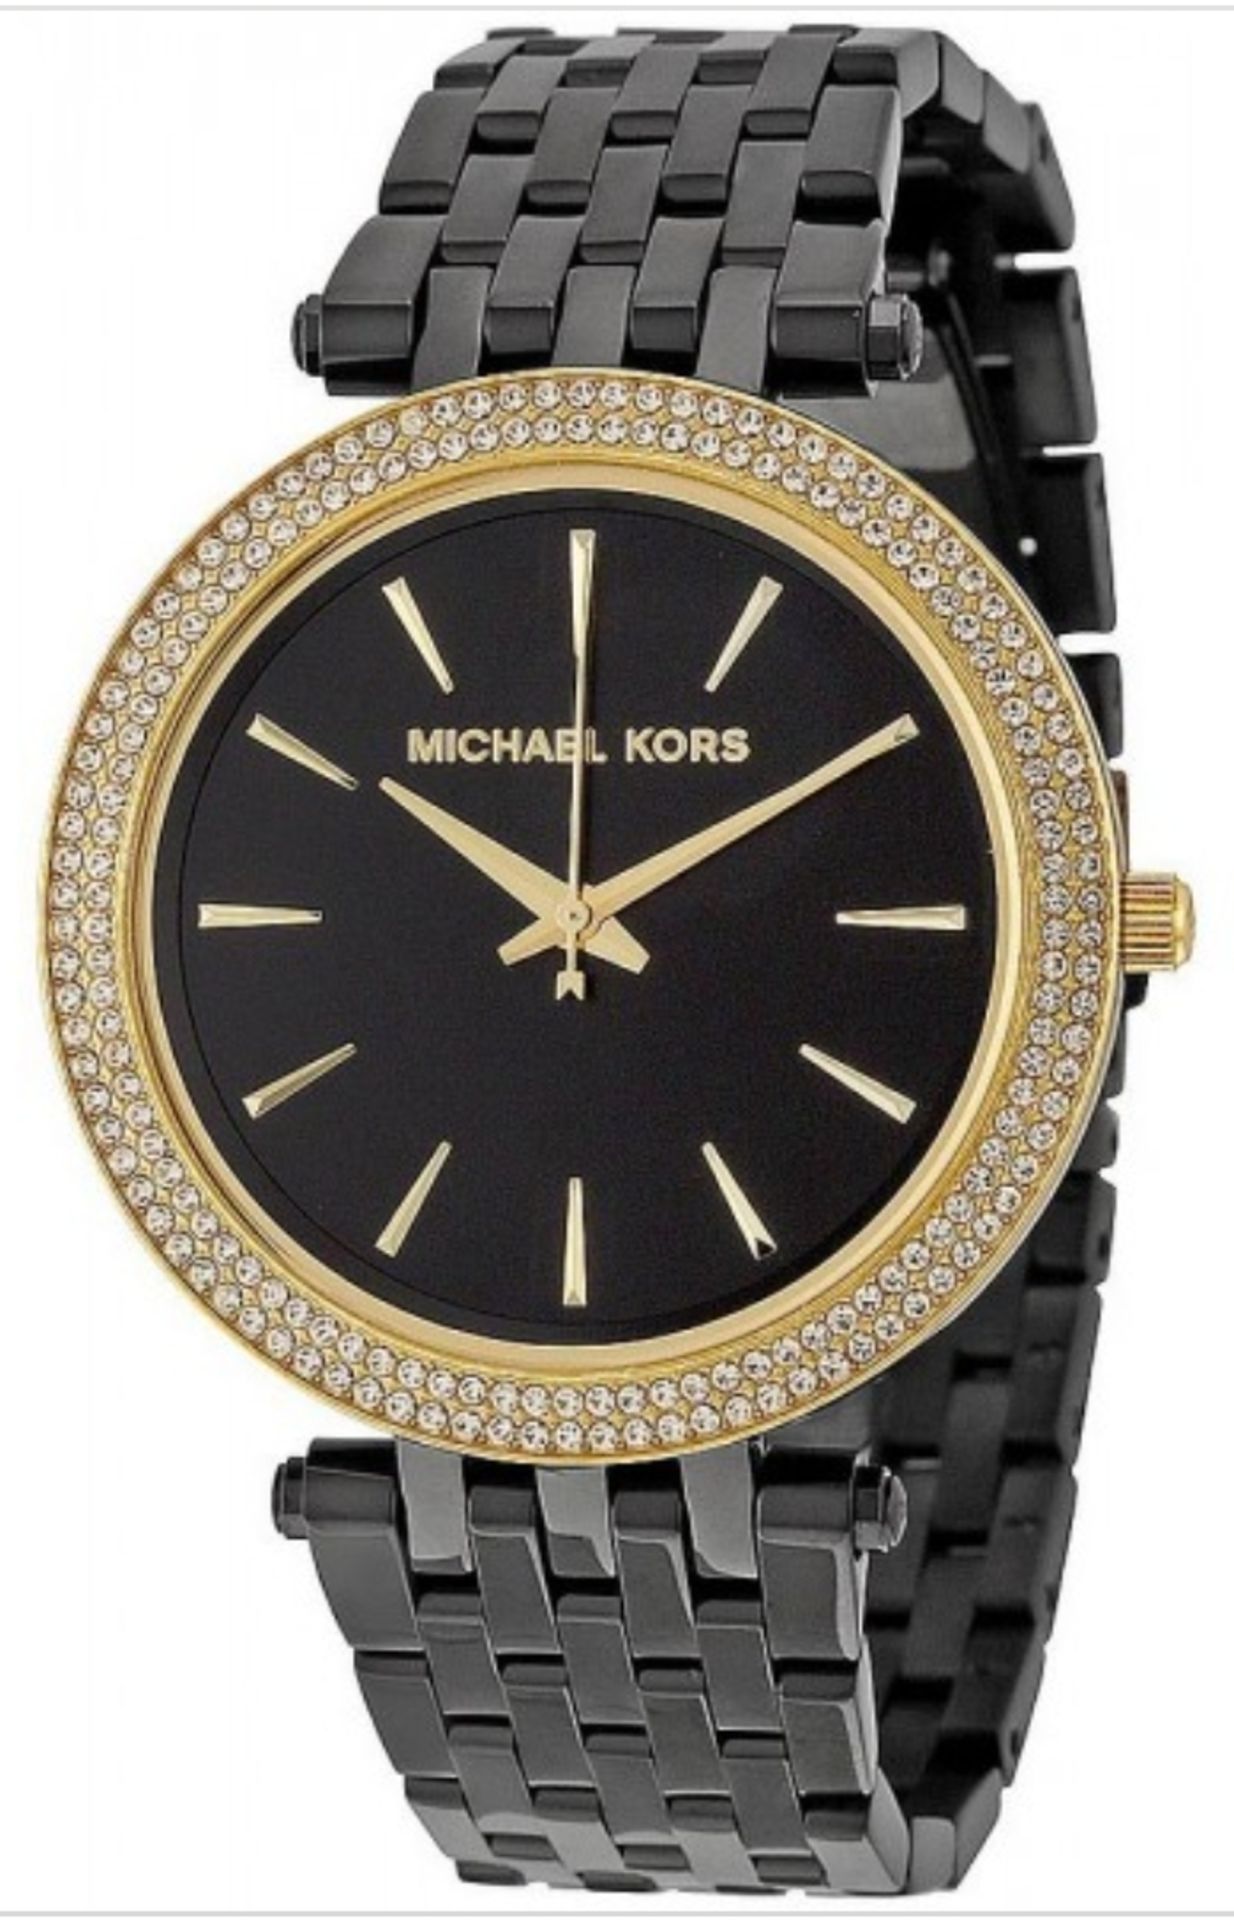 Michael Kors MK3322 Darci Gold & Black Stainless Steel Ladies Watch - Image 2 of 8